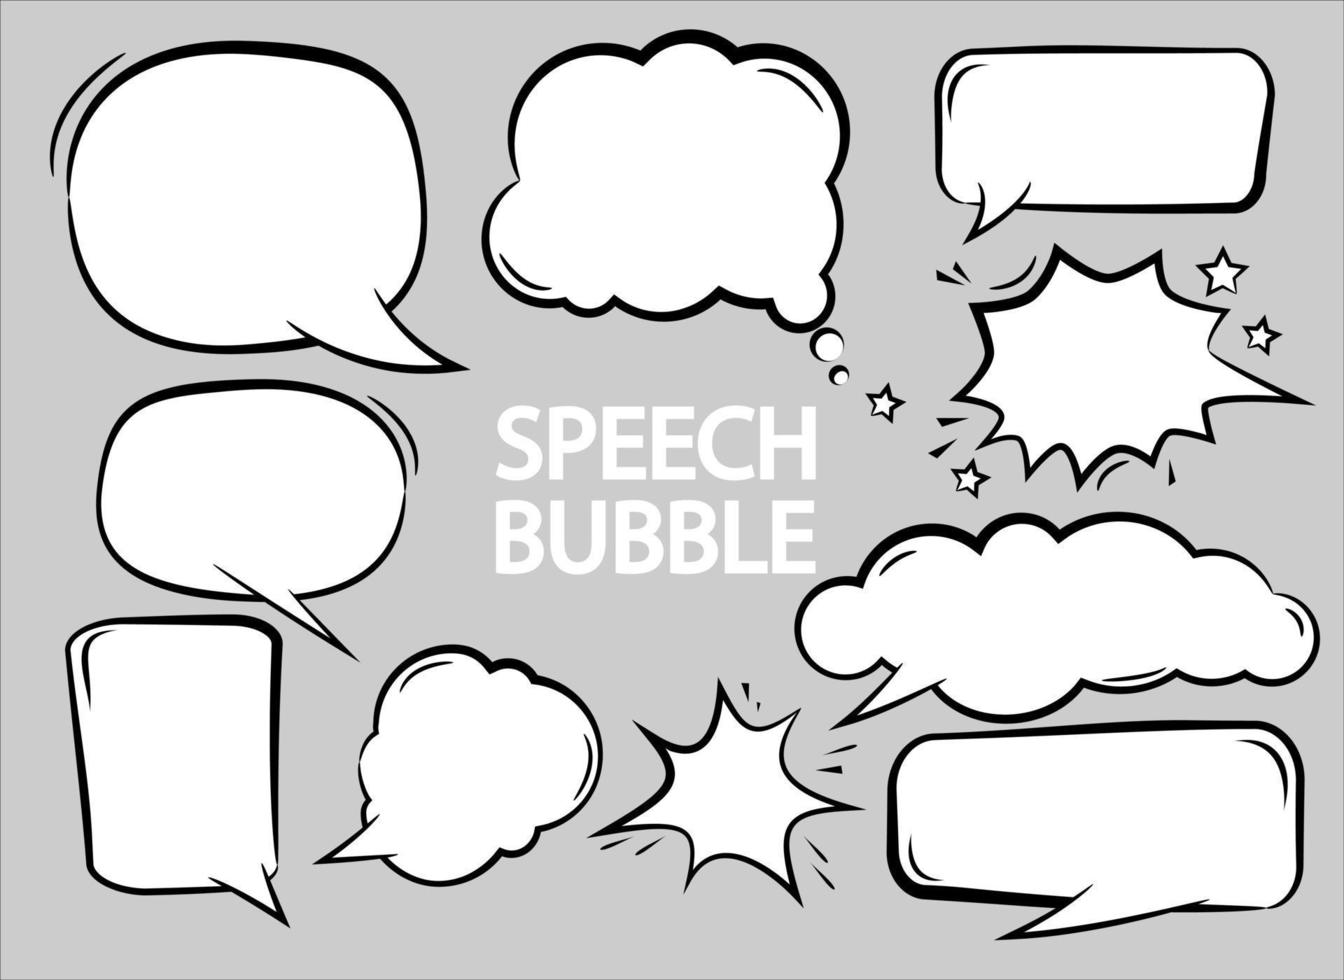 Leere Comic-Cartoon-Blasen mit unterschiedlicher Sprache in grauem Hintergrund, Kommunikations-Chat-Zeichen-Symbolvektor vektor